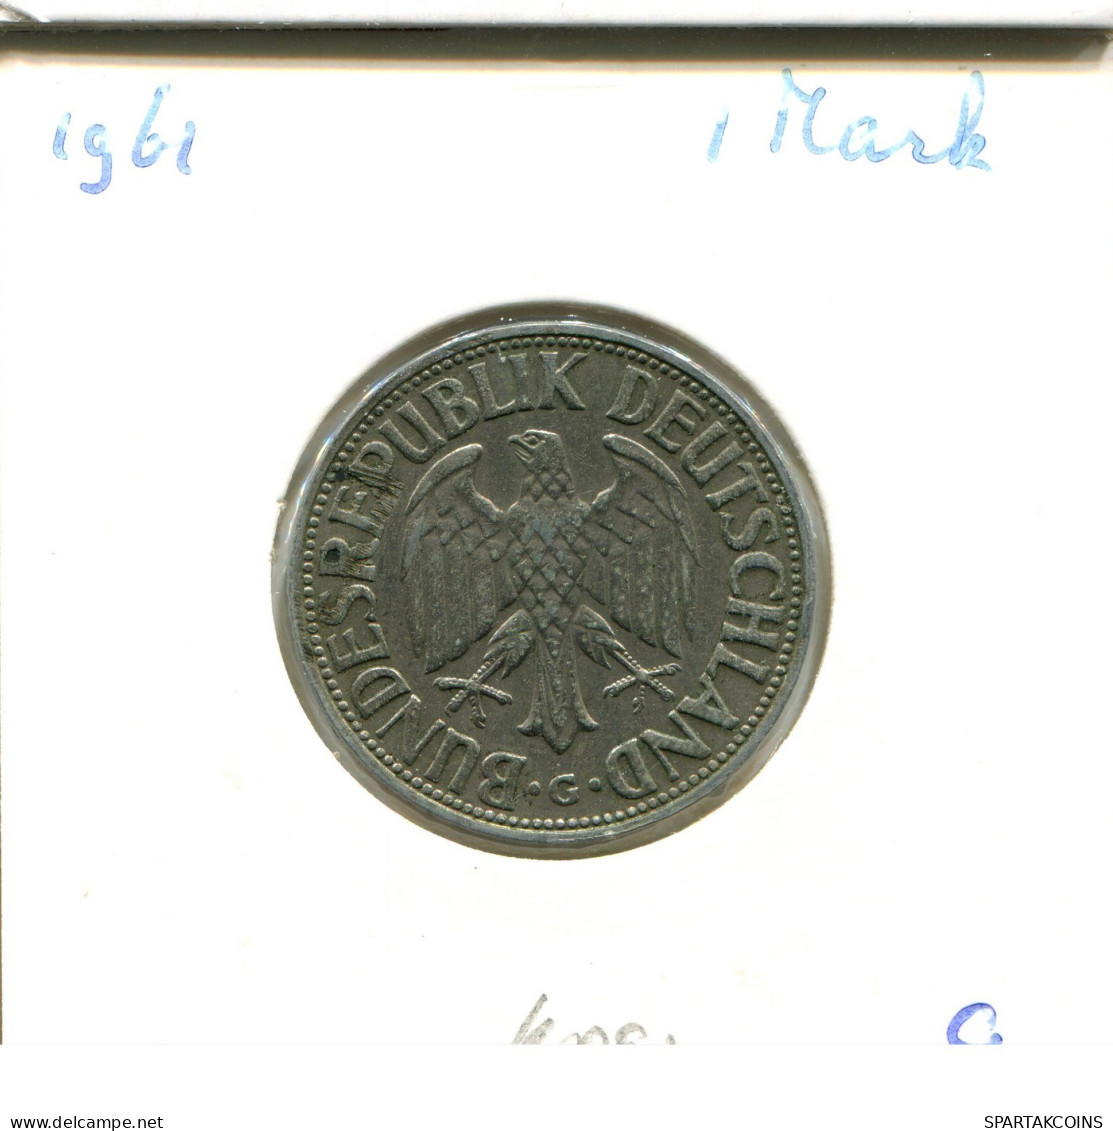 1 DM 1961 G BRD DEUTSCHLAND Münze GERMANY #DA835.D.A - 1 Mark